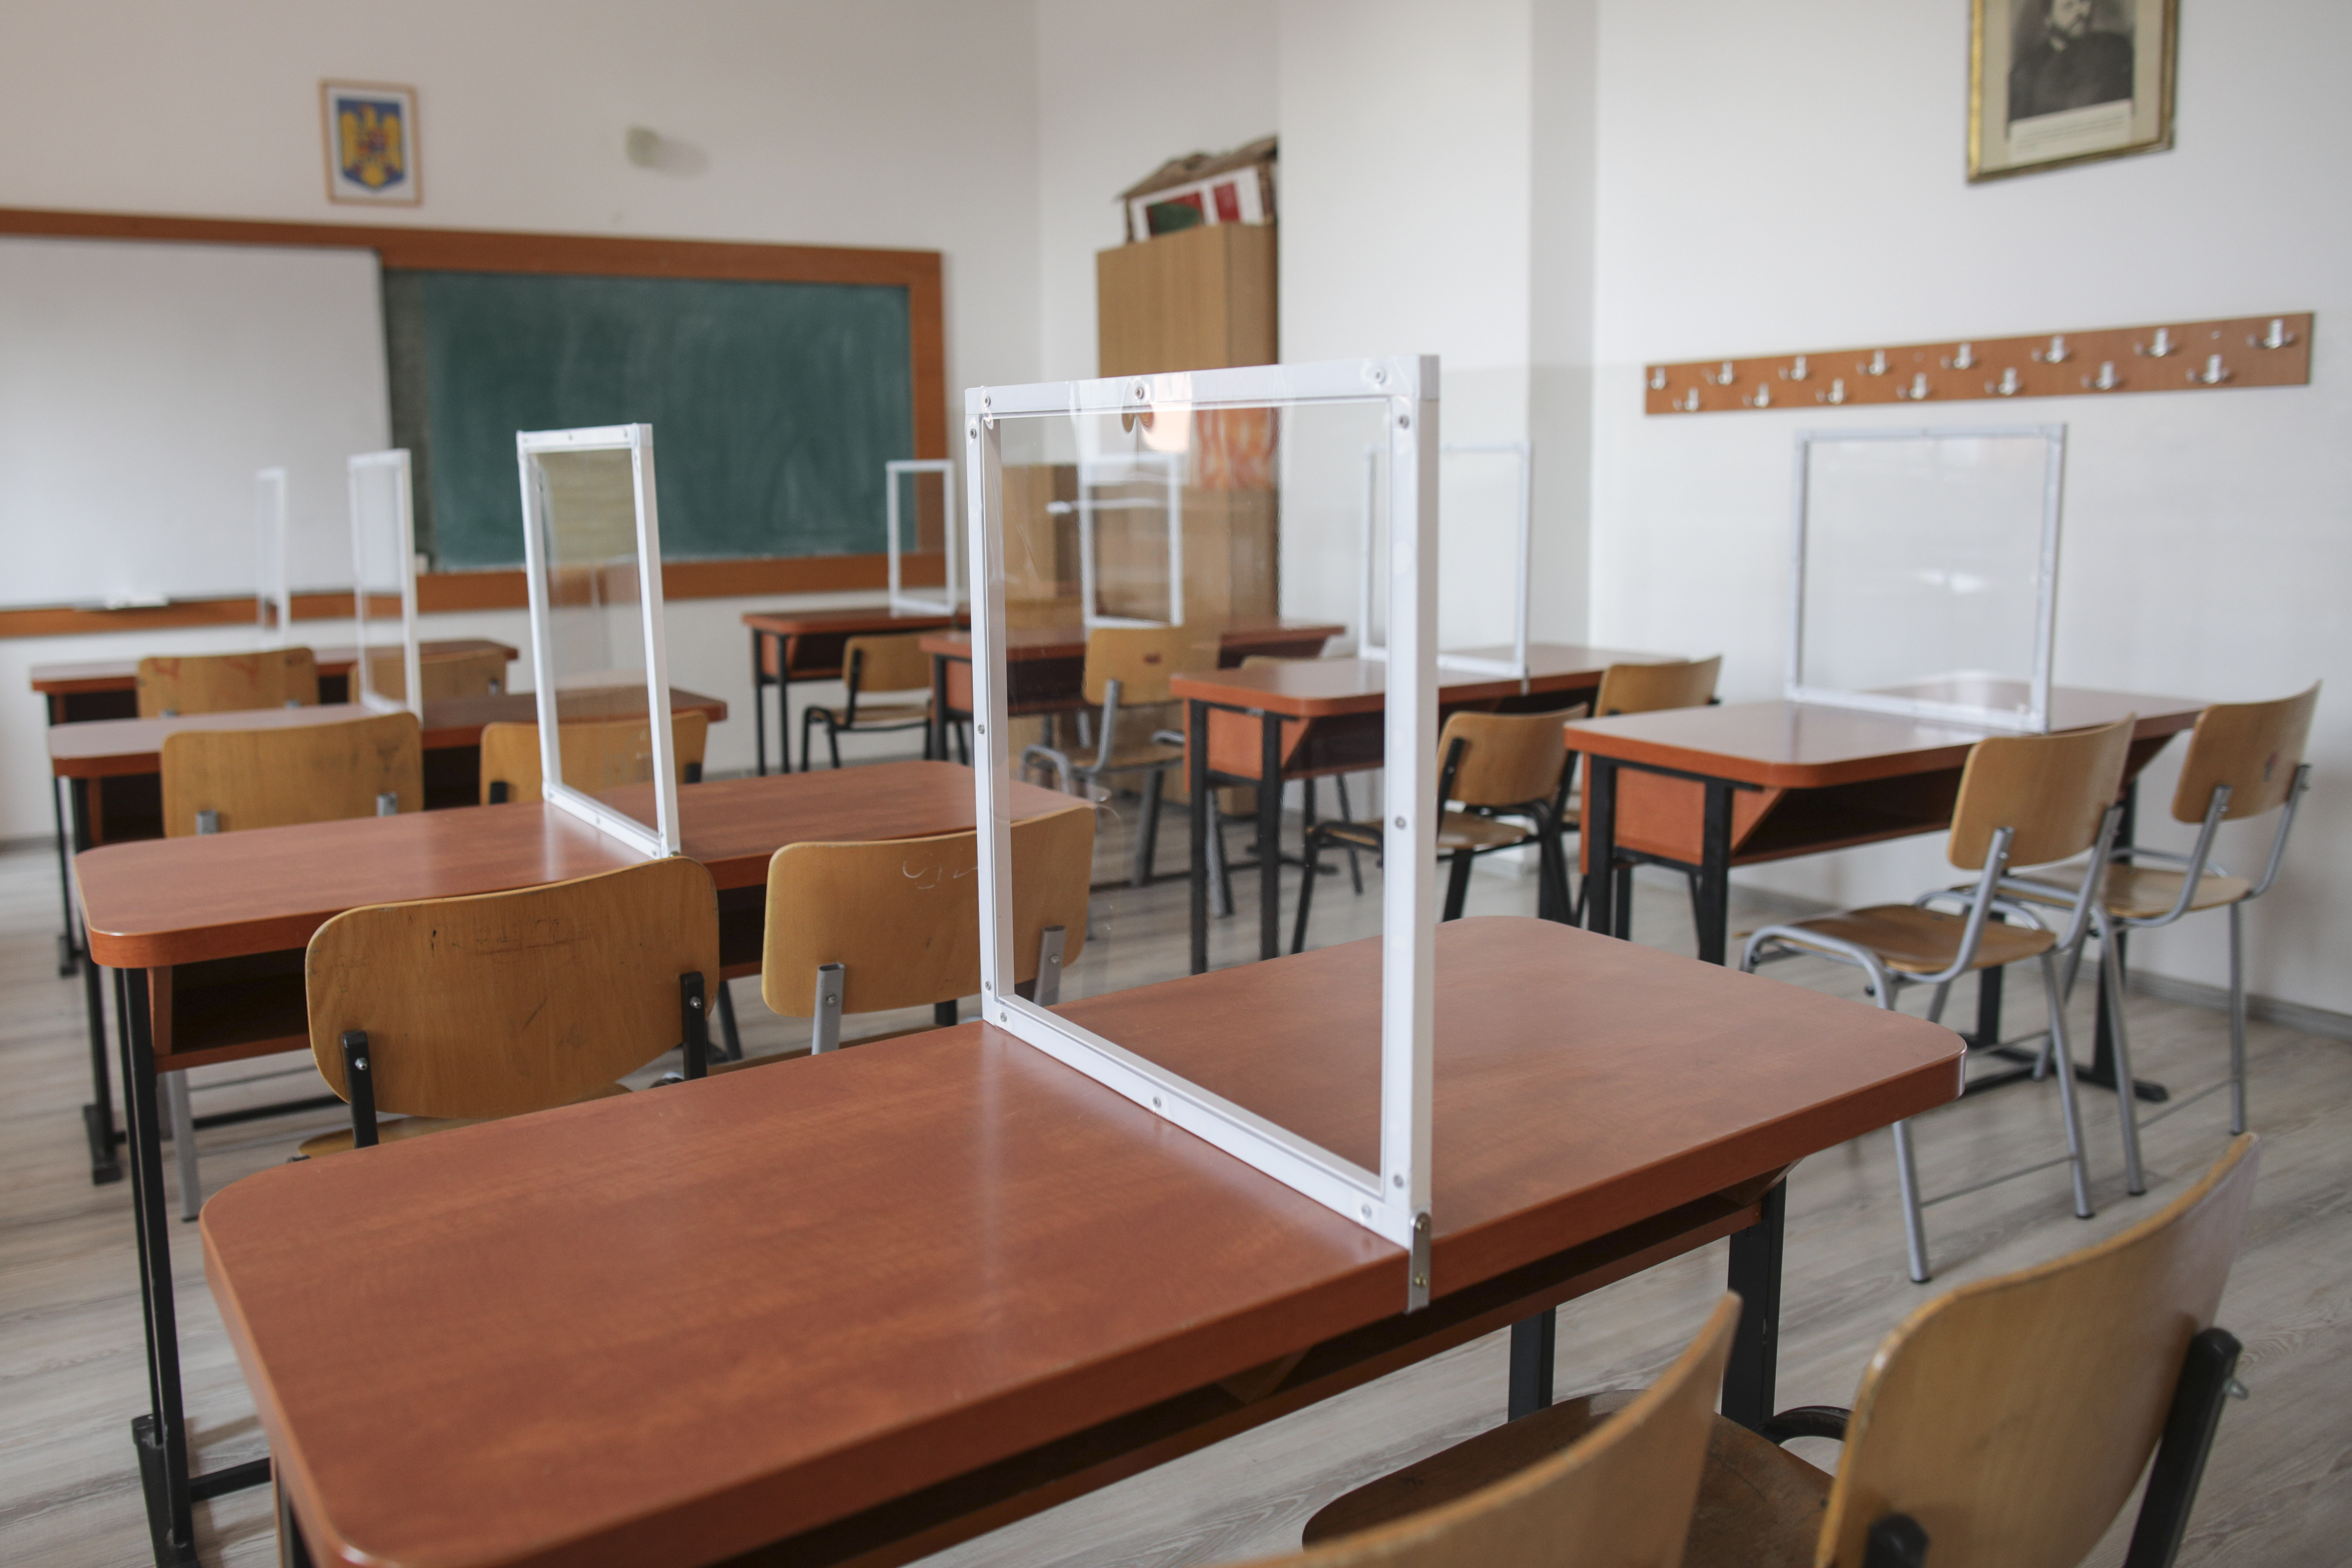 Peste 400 de elevi și profesori din Vâlcea, testați pozitiv cu COVID. 12 școli au trecut integral în online